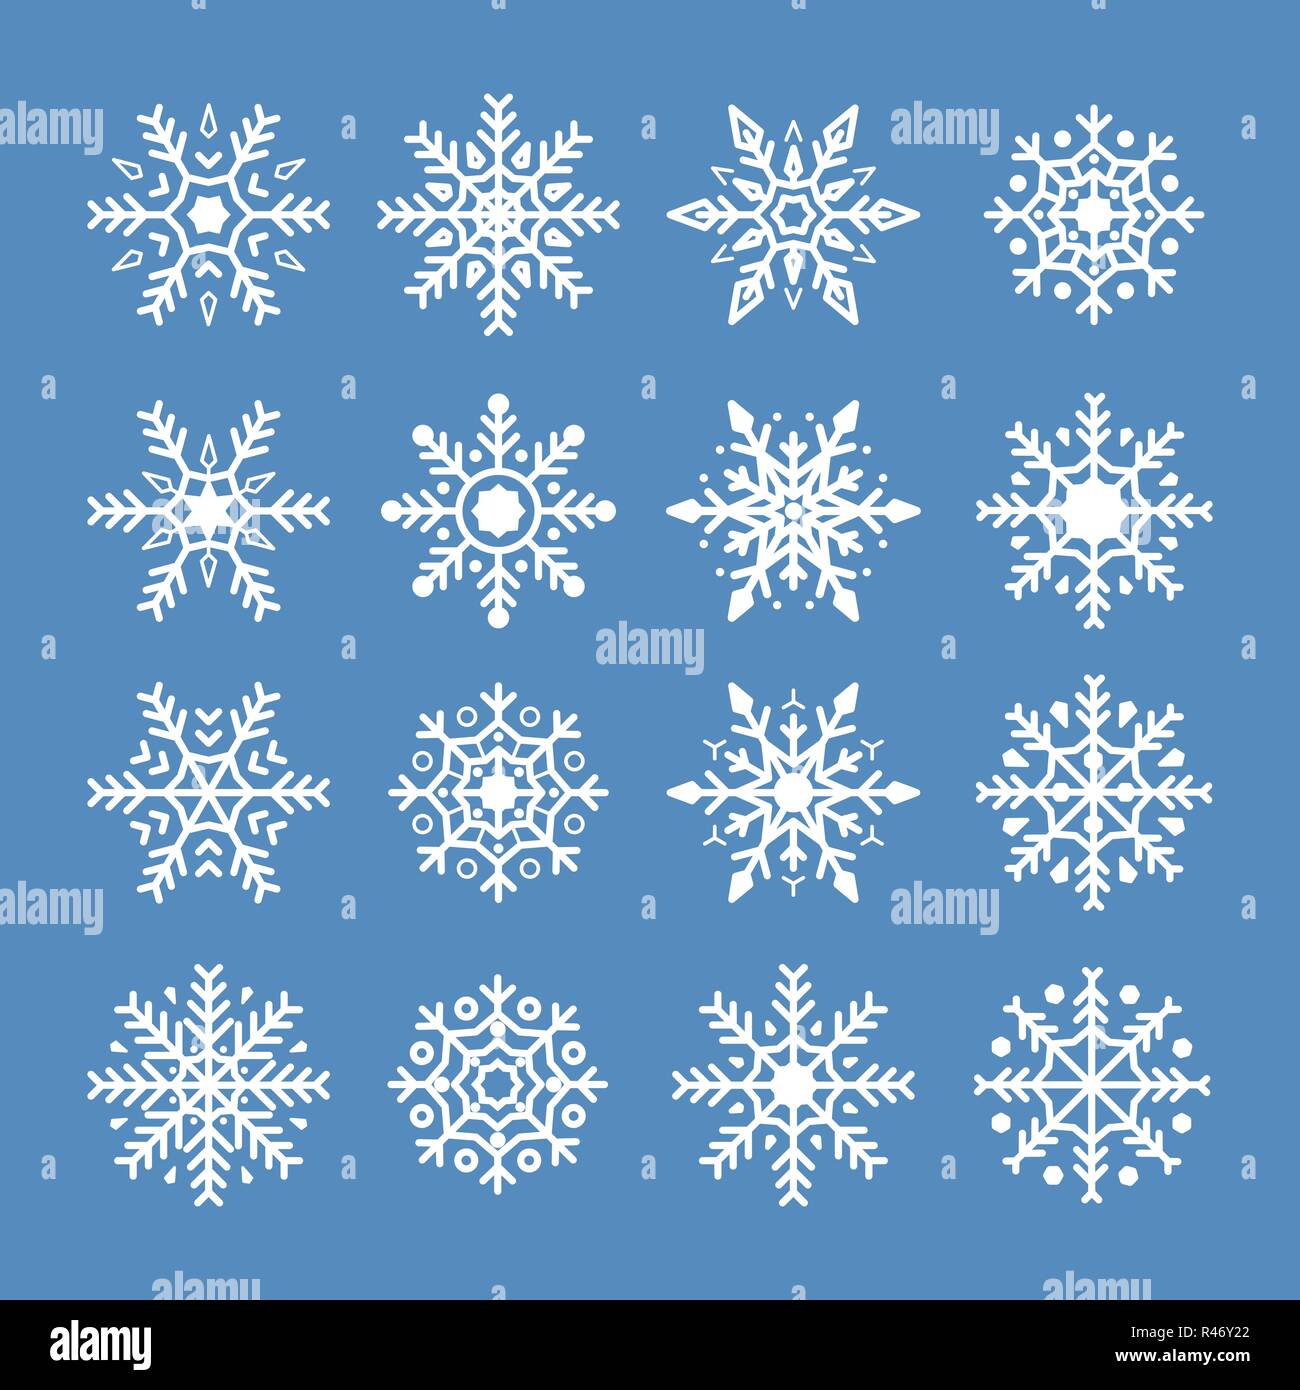 Weiße Schneeflocken auf blauem Hintergrund isoliert. Schneeflocke Symbol für Weihnachten und das neue Jahr. Abstrakte Schneeflocke Muster. Urlaub Schmuck Element. Vektor Stock Vektor